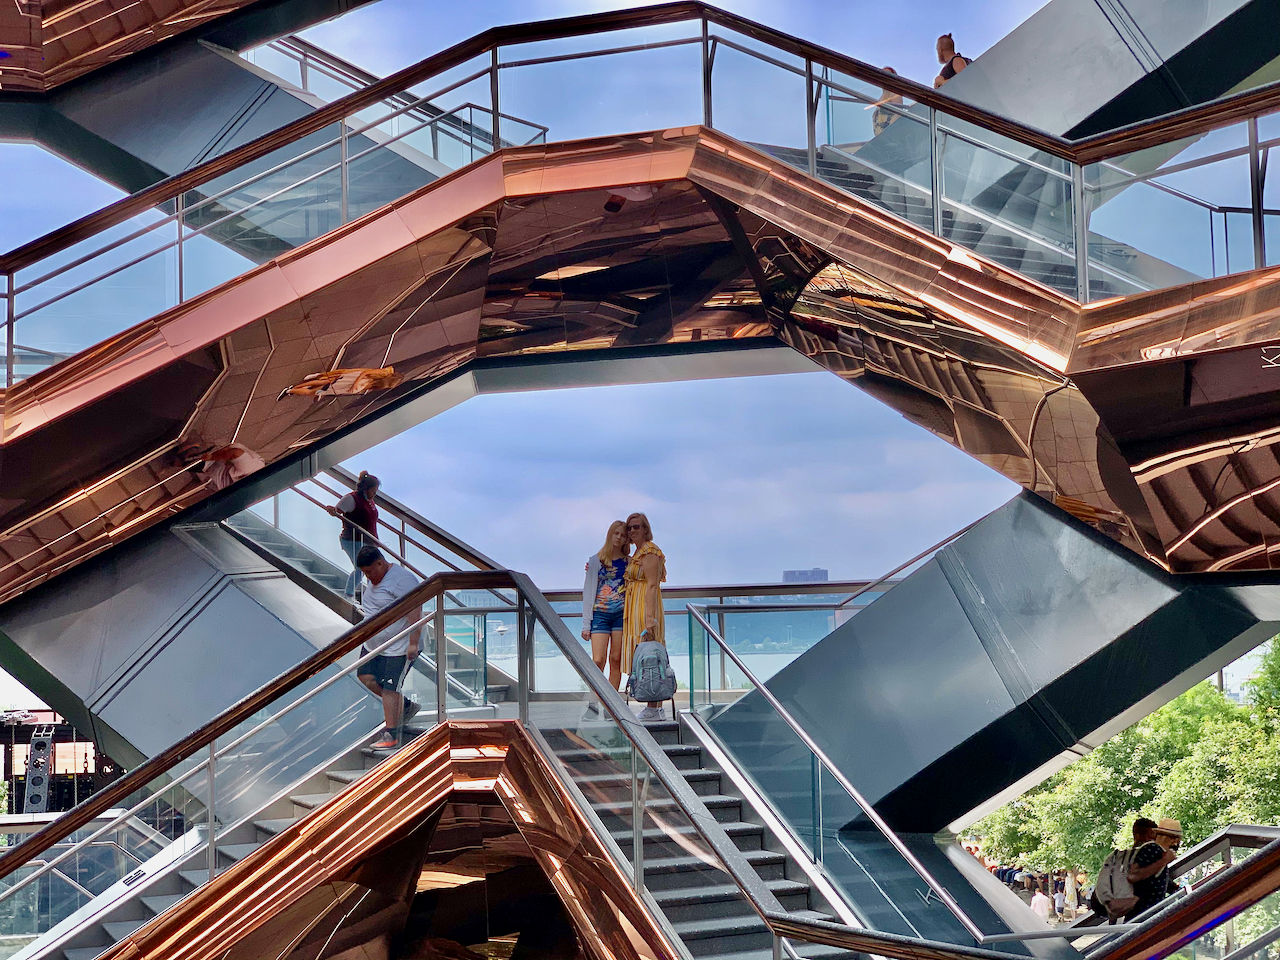 Visiter Vessel, la nouvelle structure et attraction près de l'Hudson River, avec notre guide de voyage à New-York